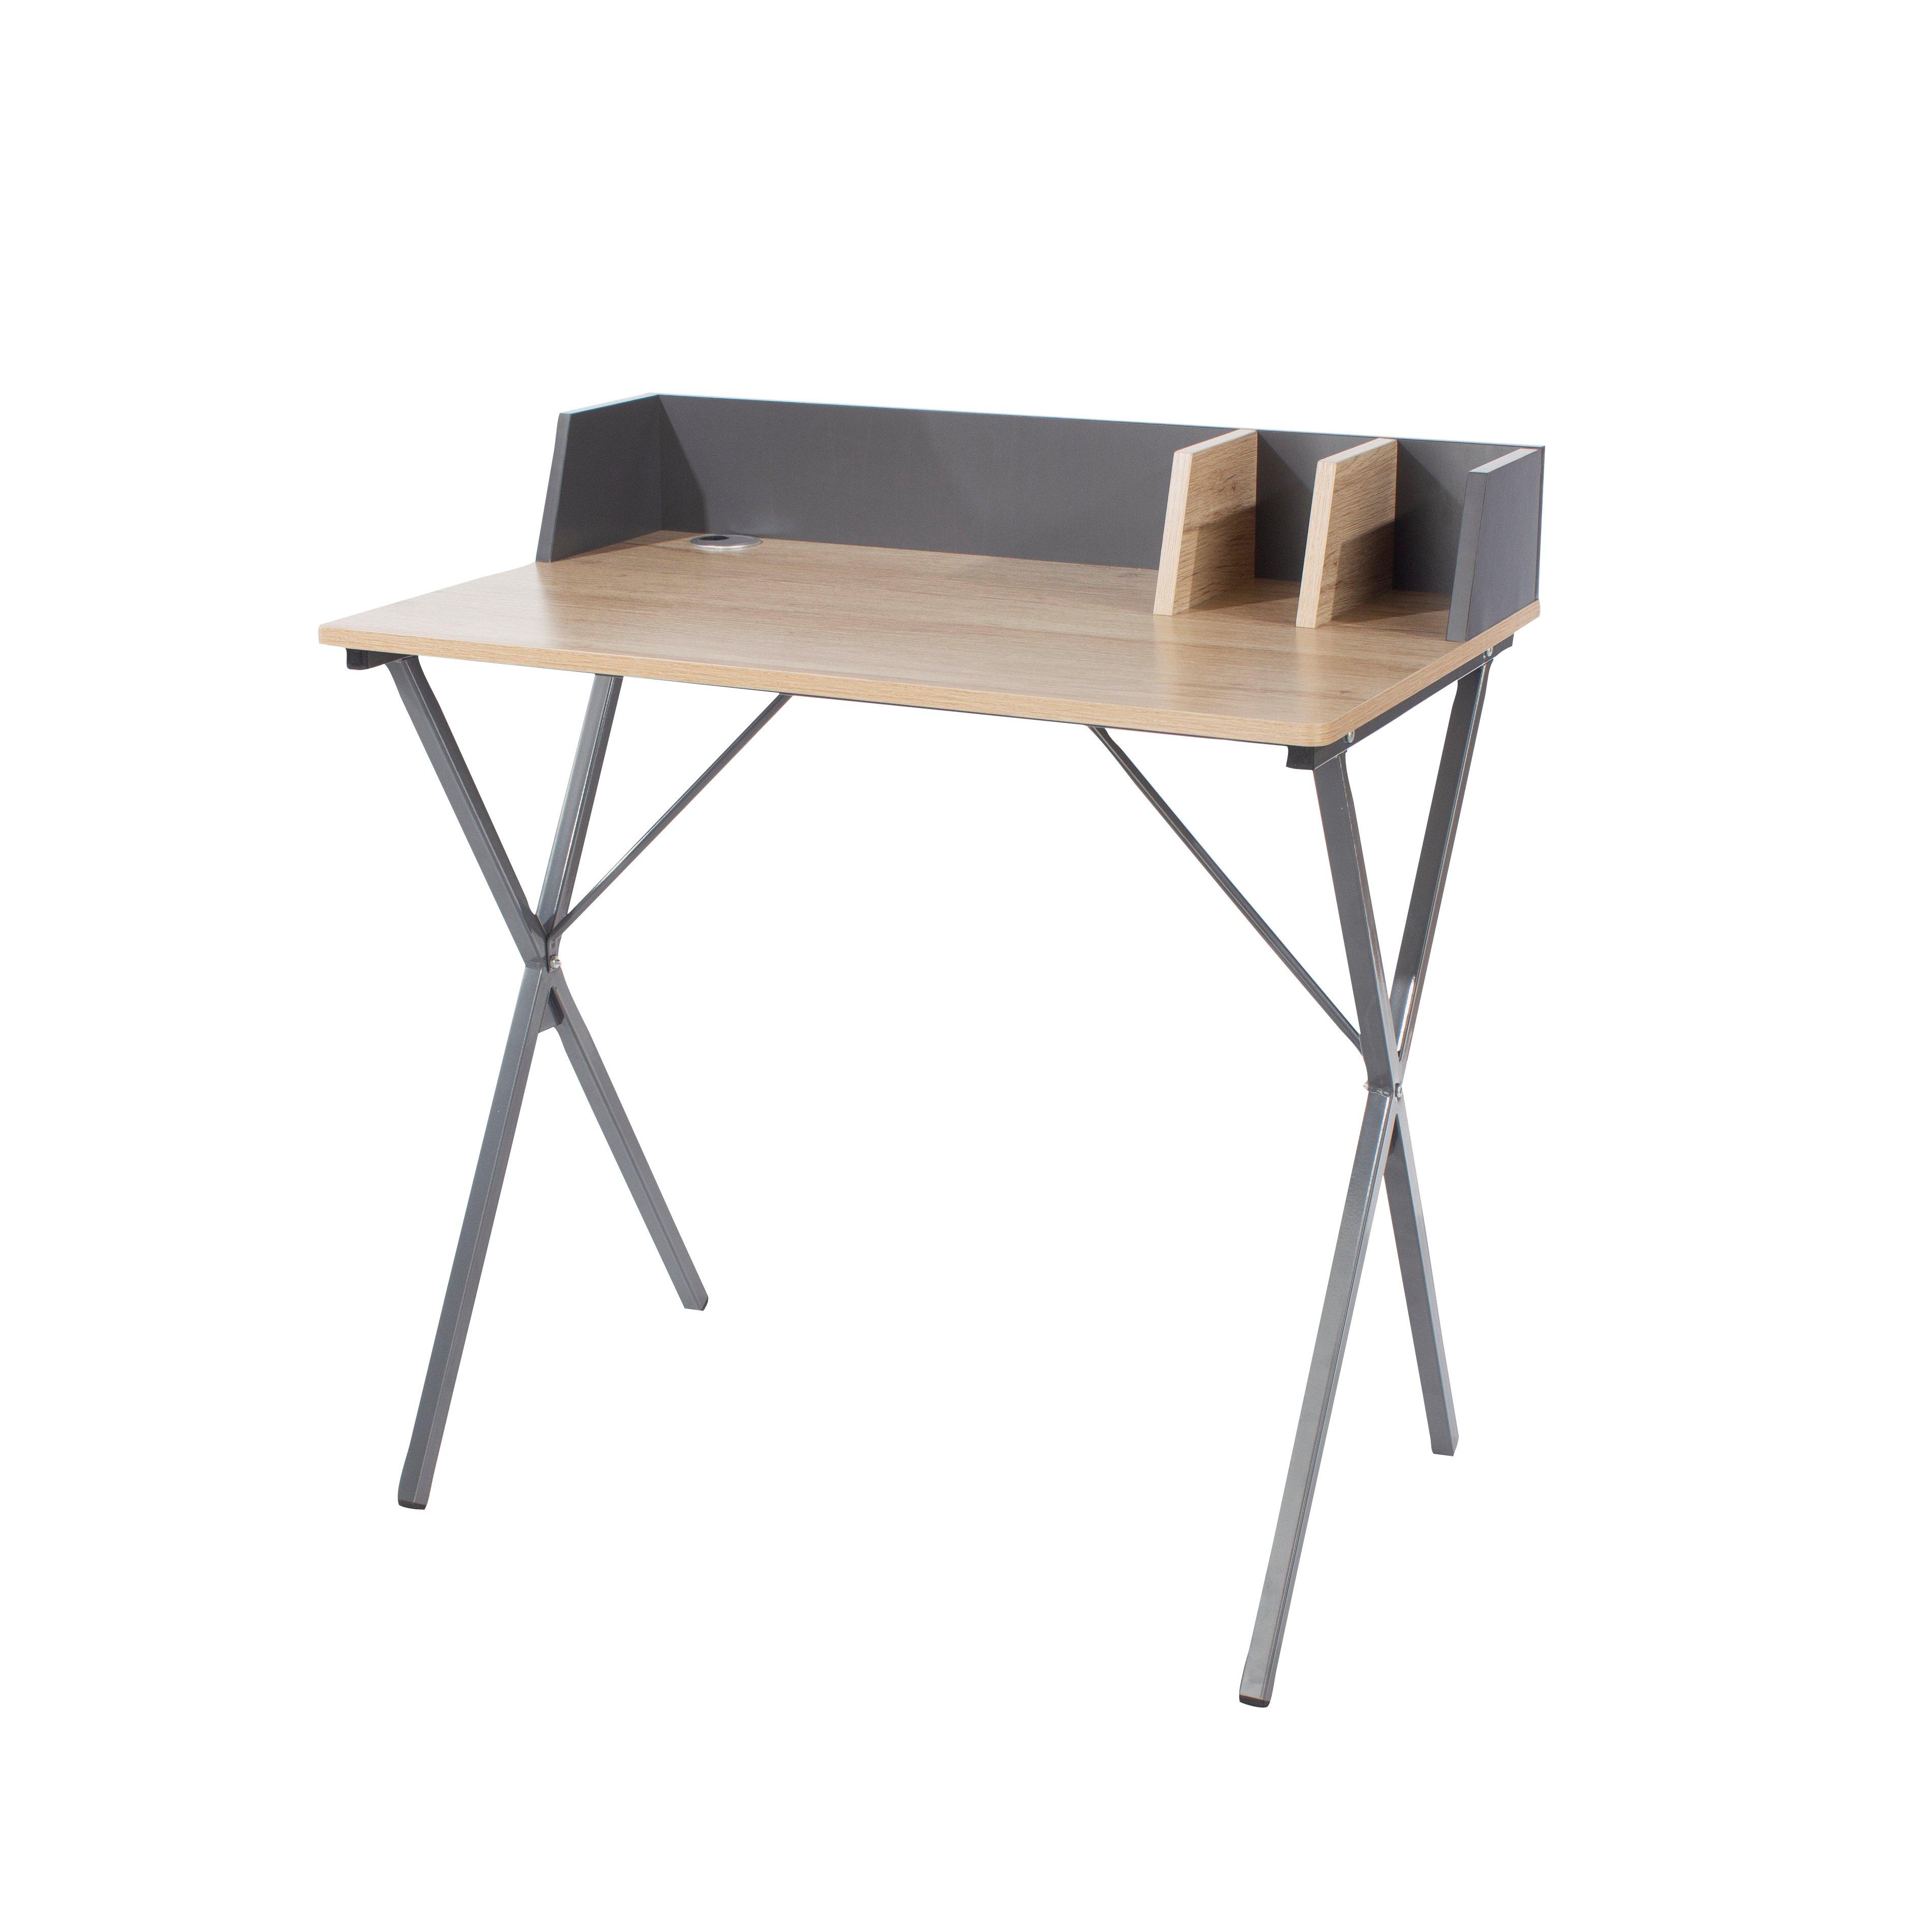 Loft Home Office Study Desk, Oak Effect Top With Grey Metal Cross Legs